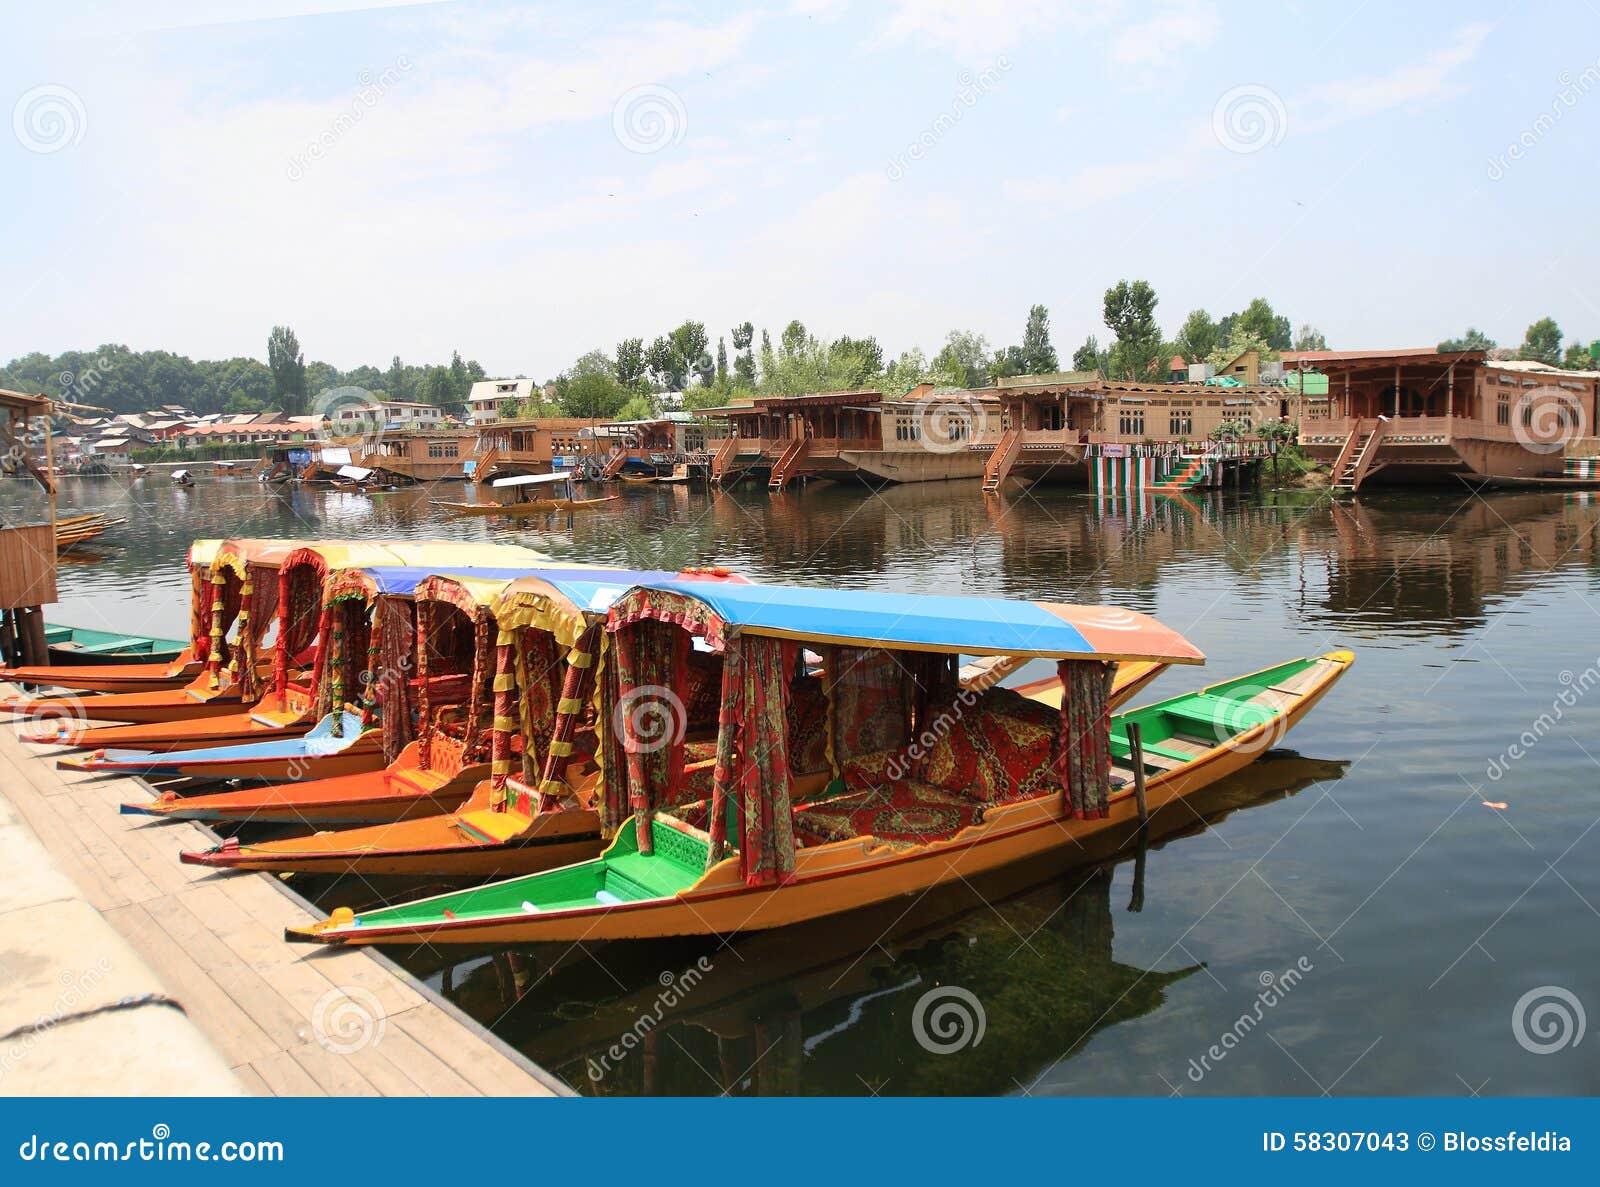 the boats in srinagar city (india)